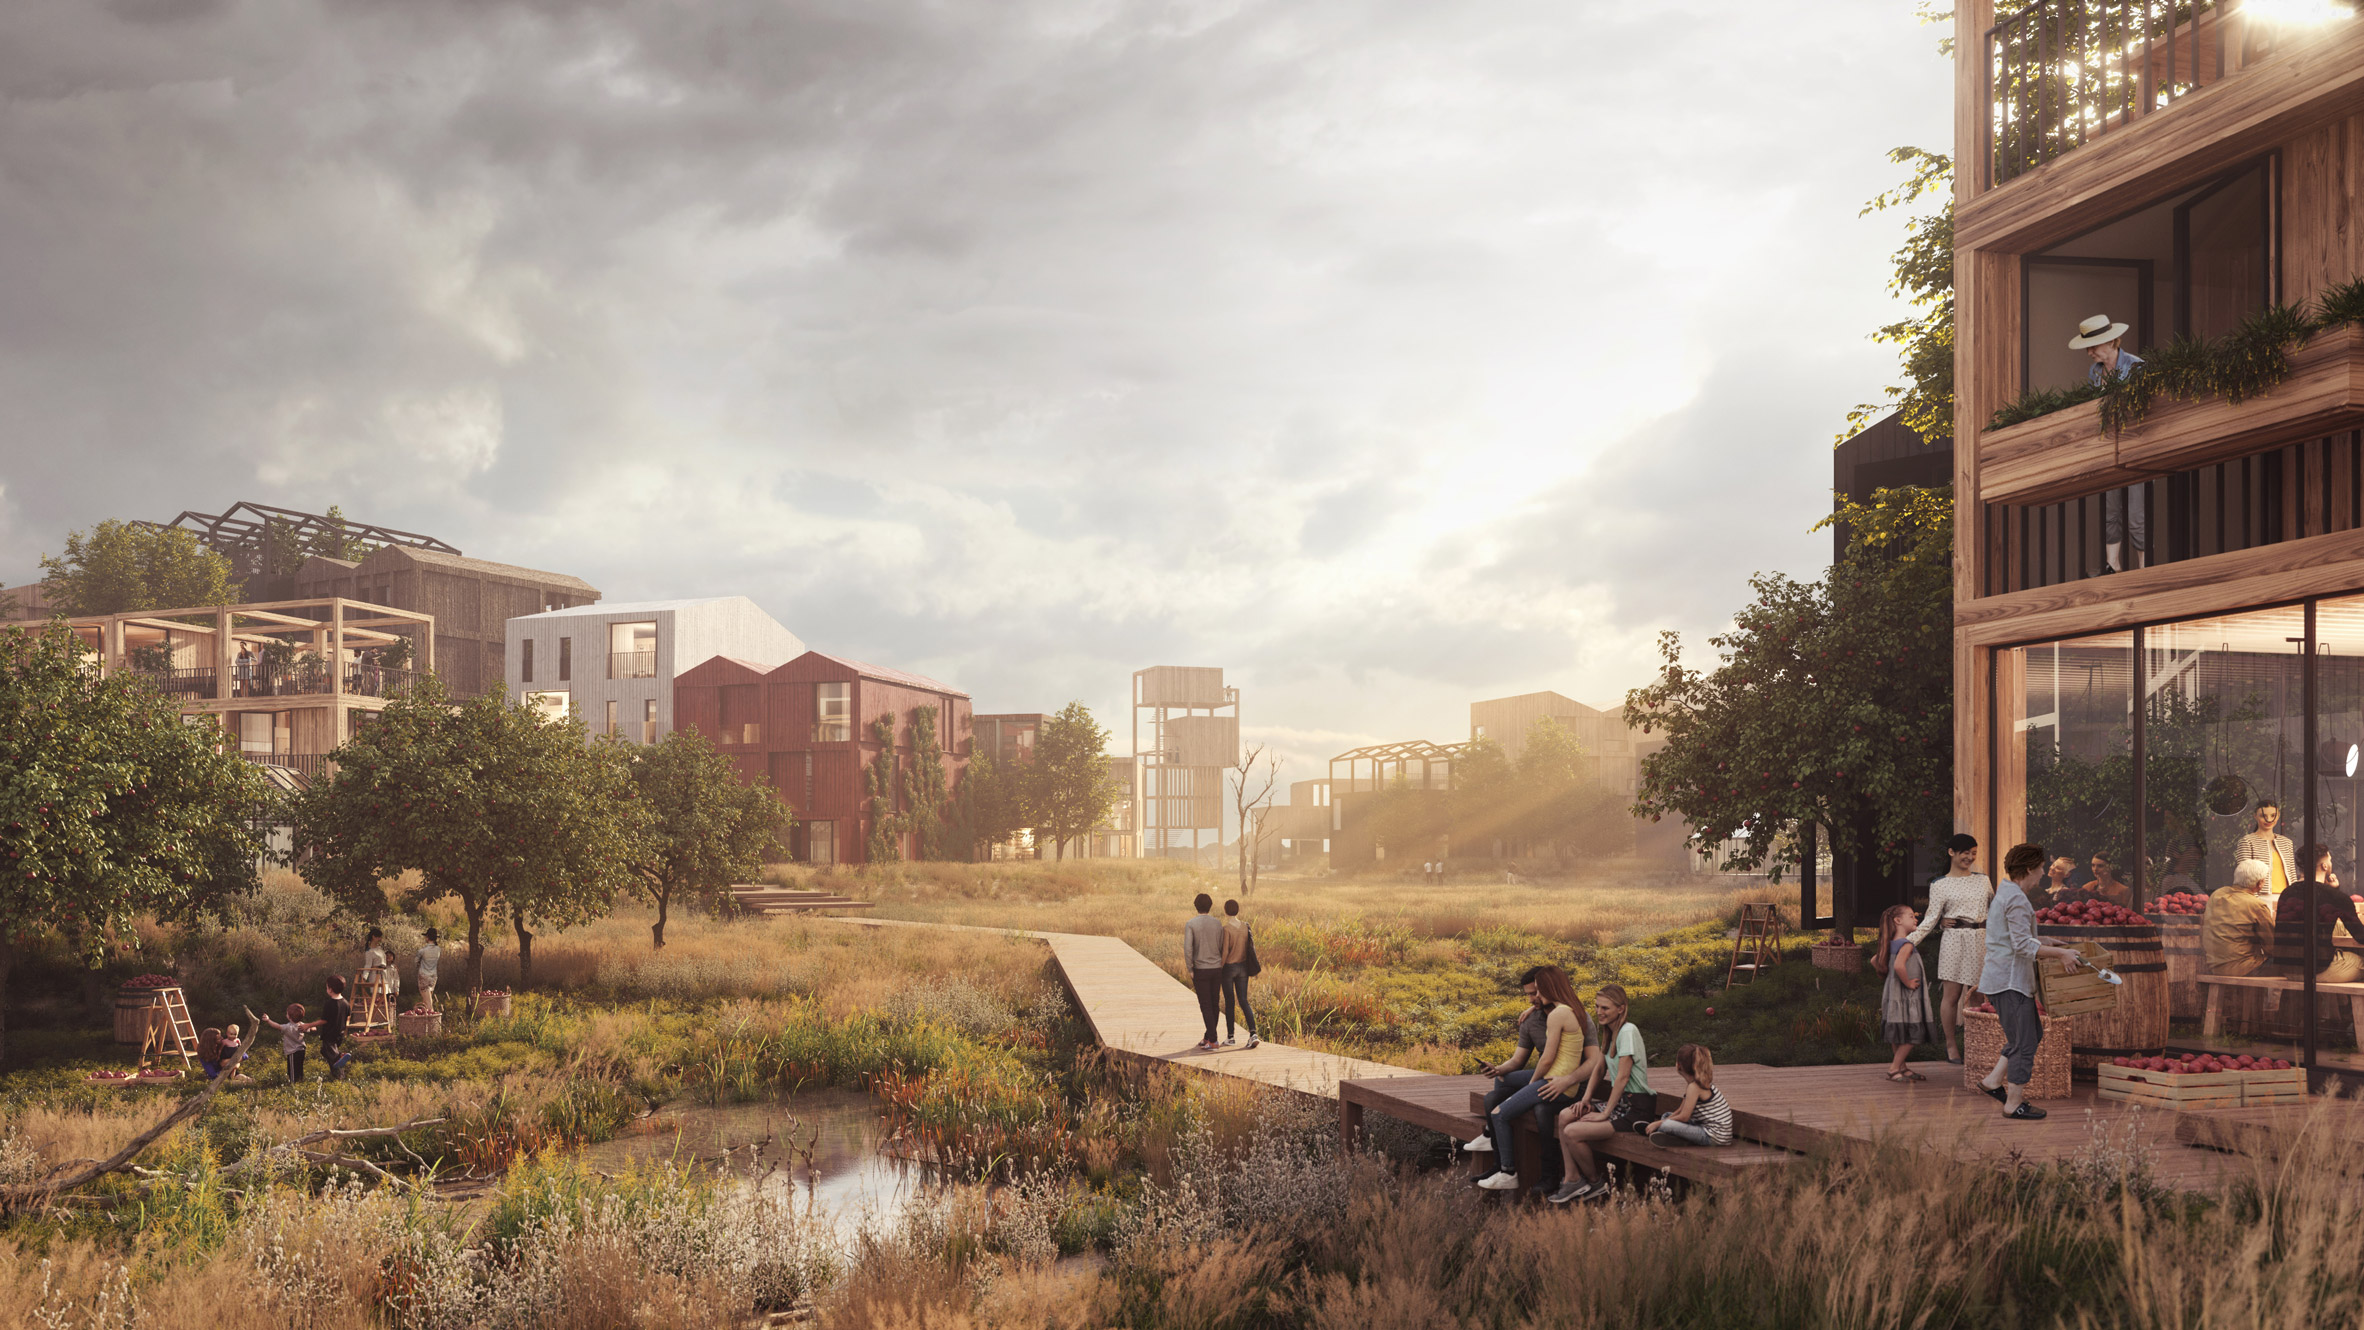 Henning Larsen reveals for Copenhagen's neighbourhood"